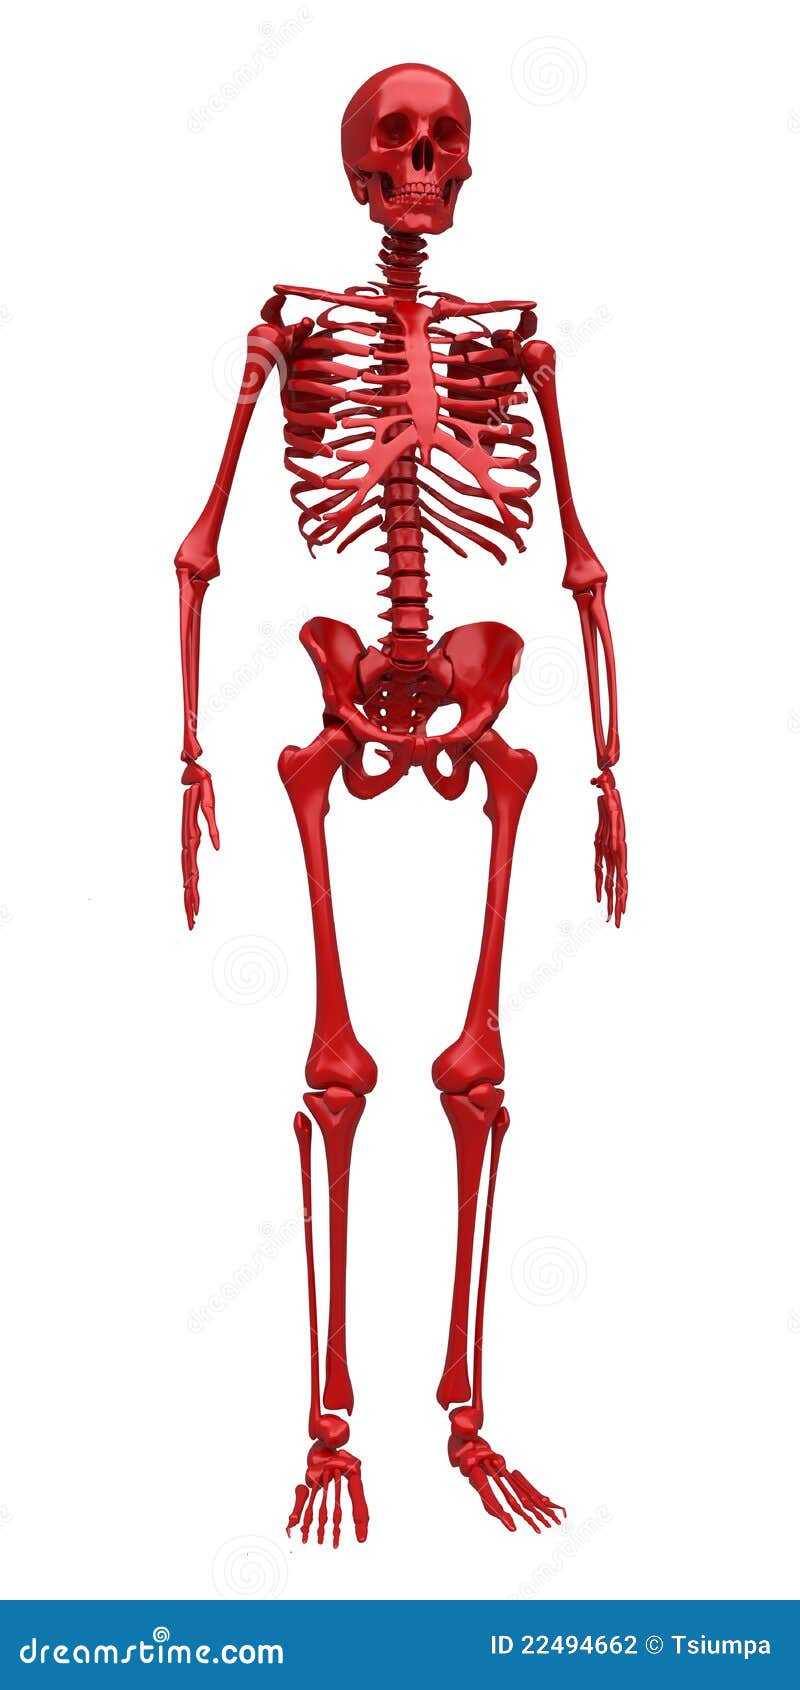 Red skeleton stock illustration. Illustration of biological - 22494662